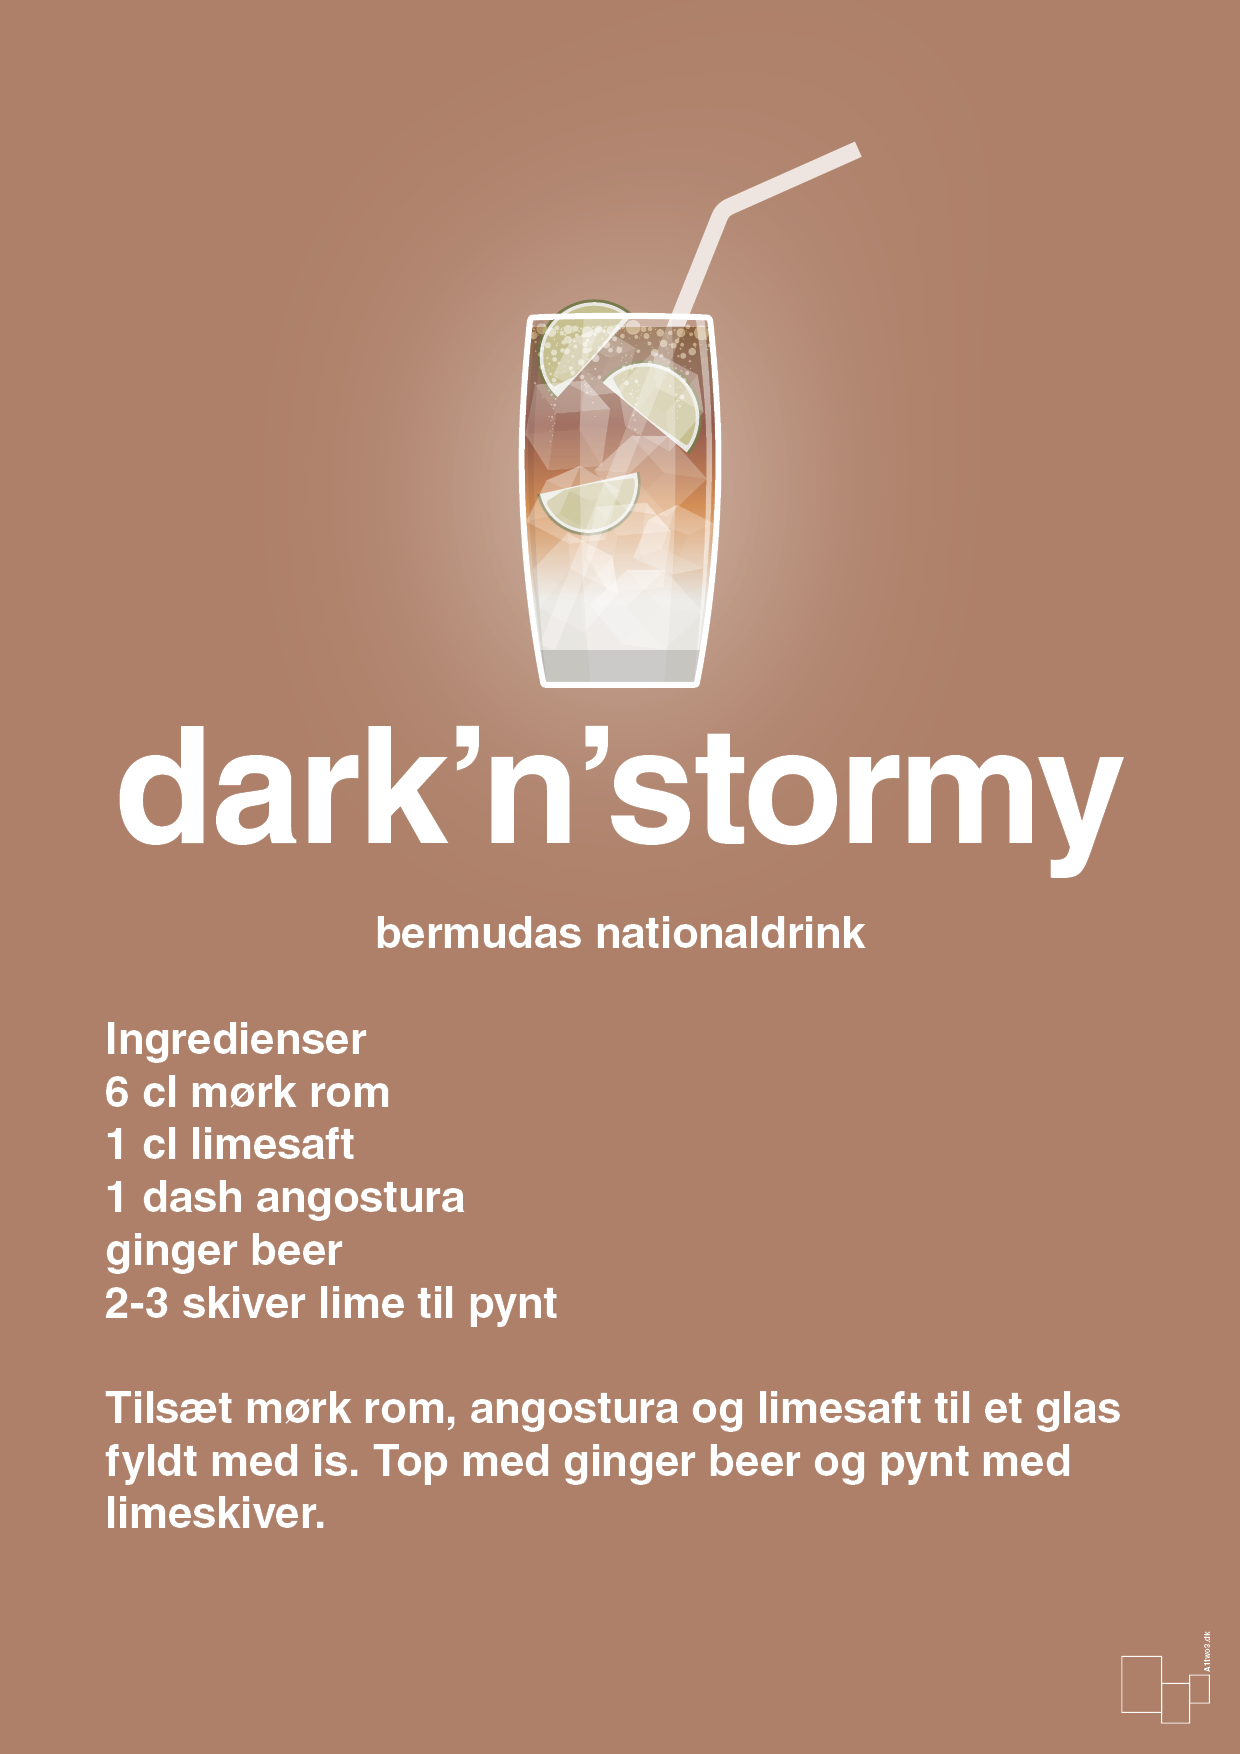 plakat: dark'n'stormy